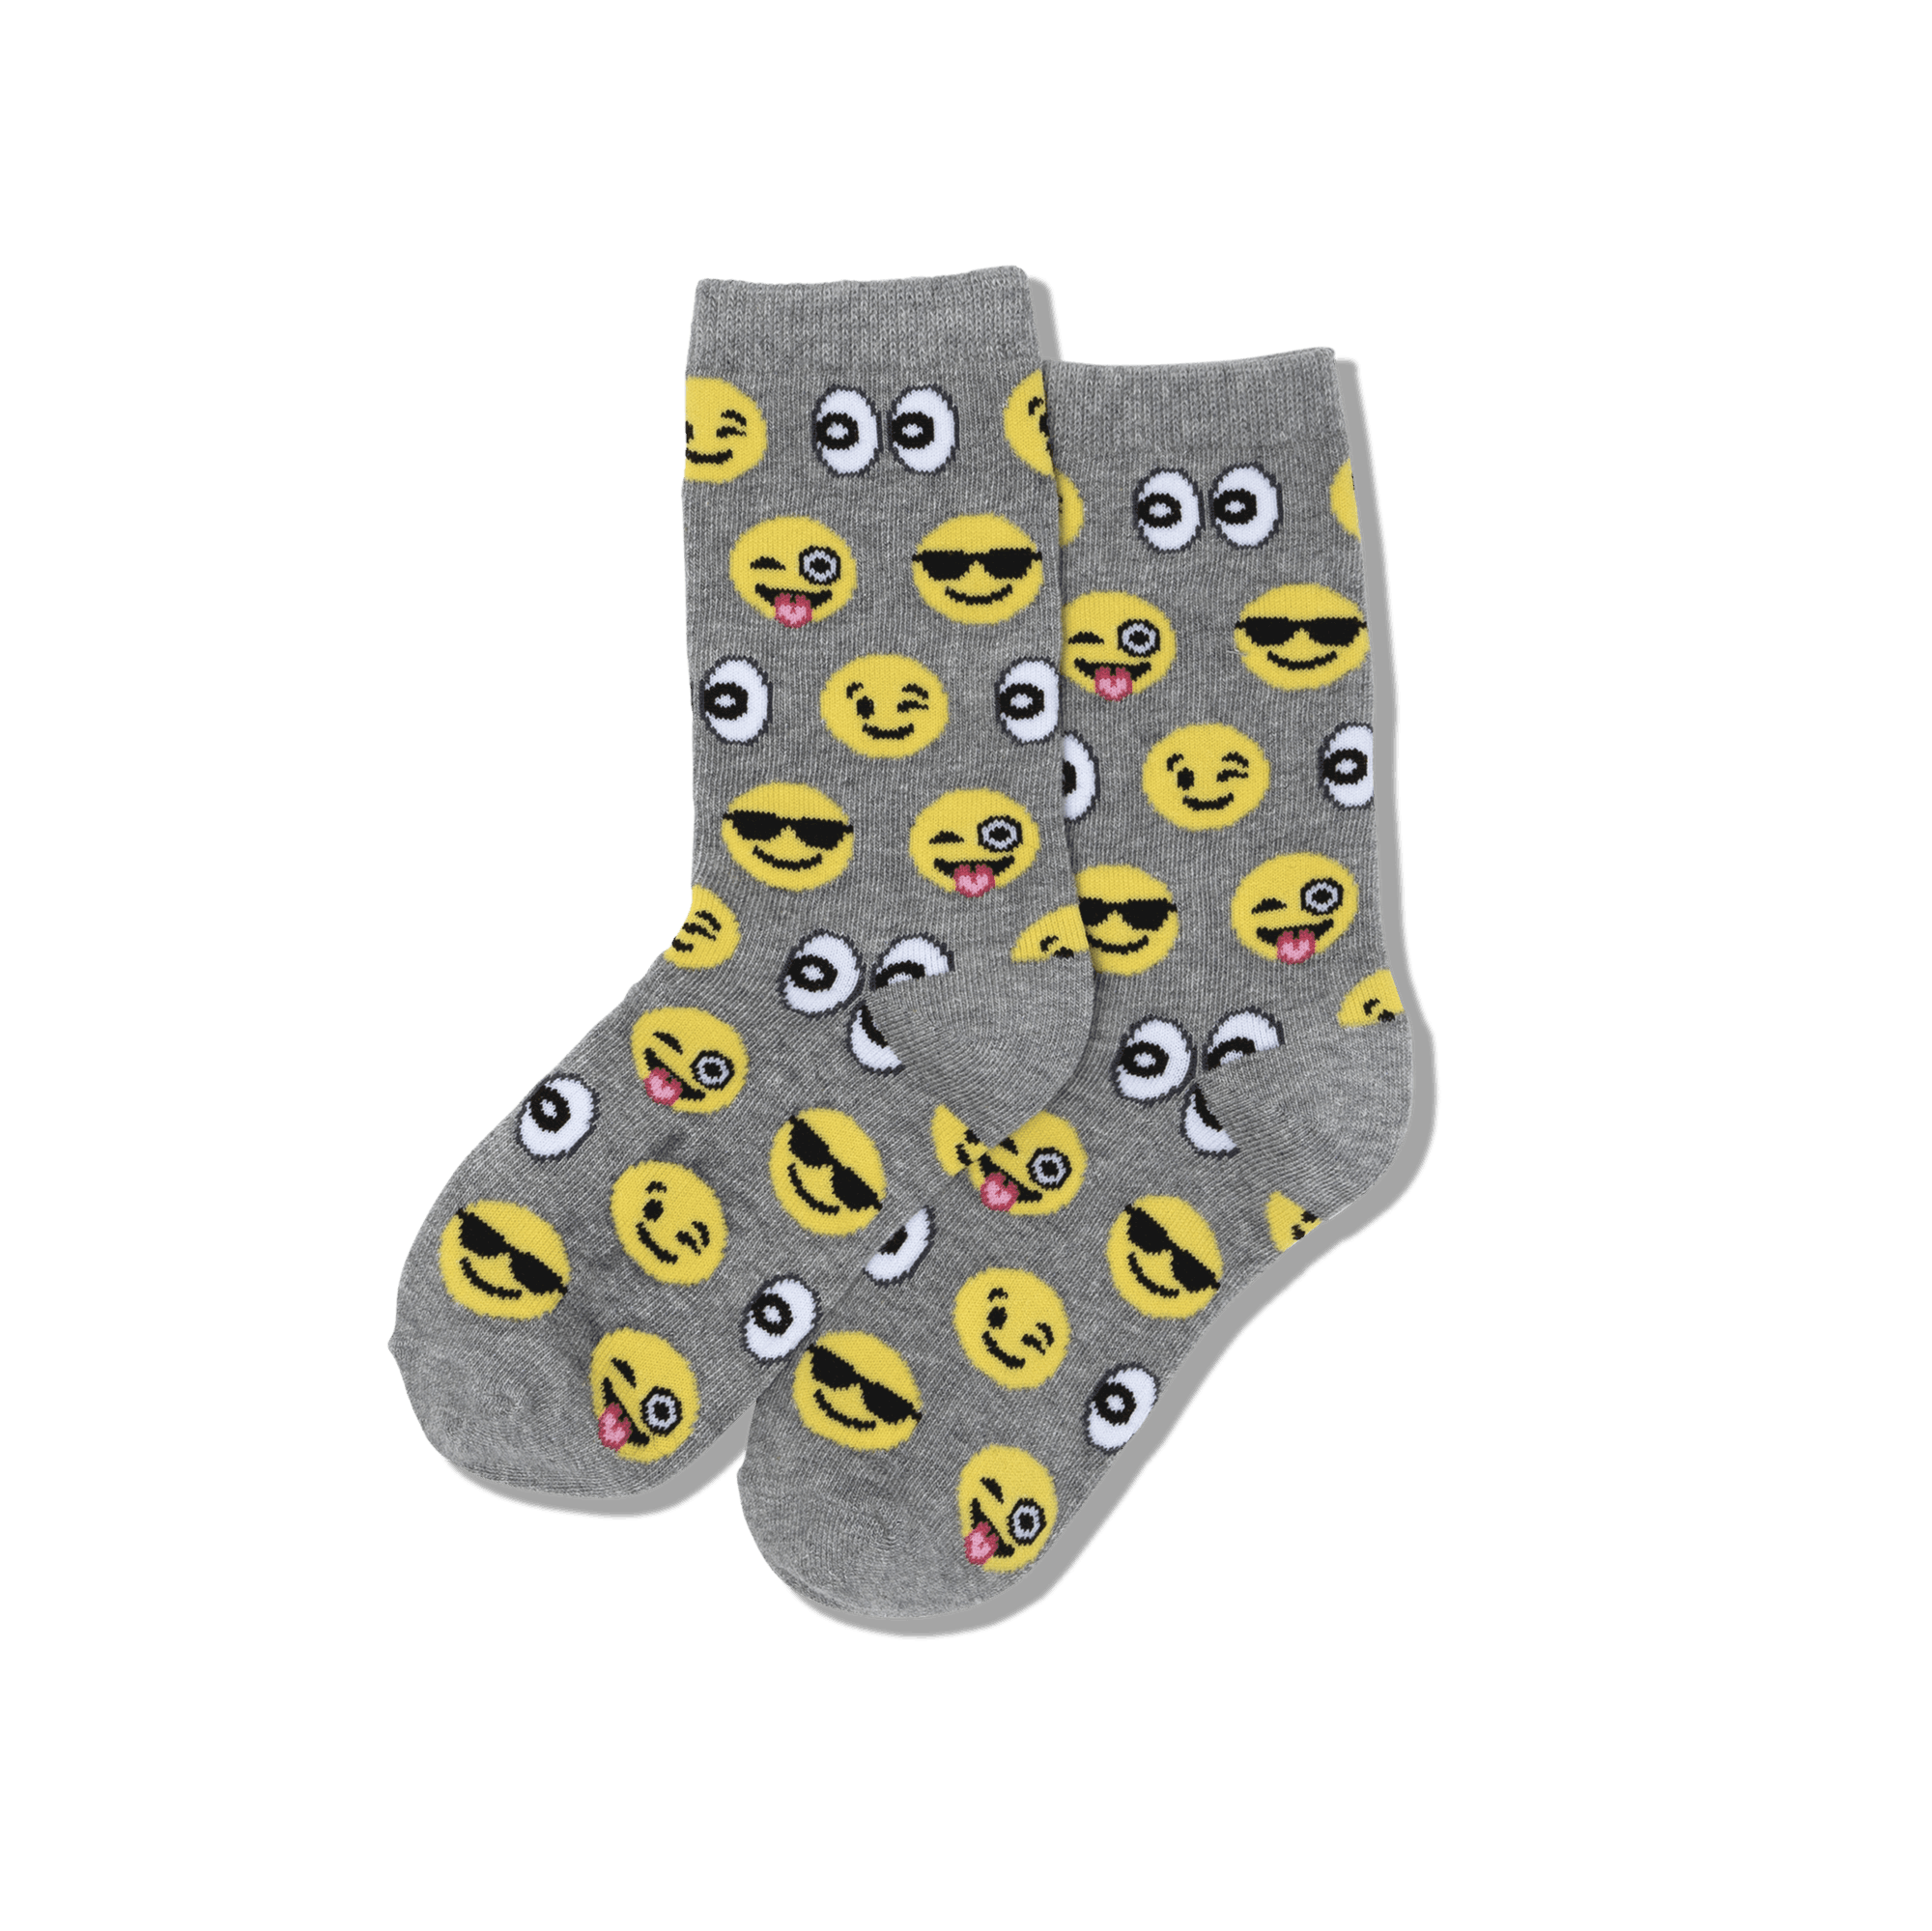 Smiley Socks Skate Socks Funny Socks Cartoon Socks Cotton Socks Cute Socks  Monster Socks Happy Socks Face Pattern Socks -  Canada